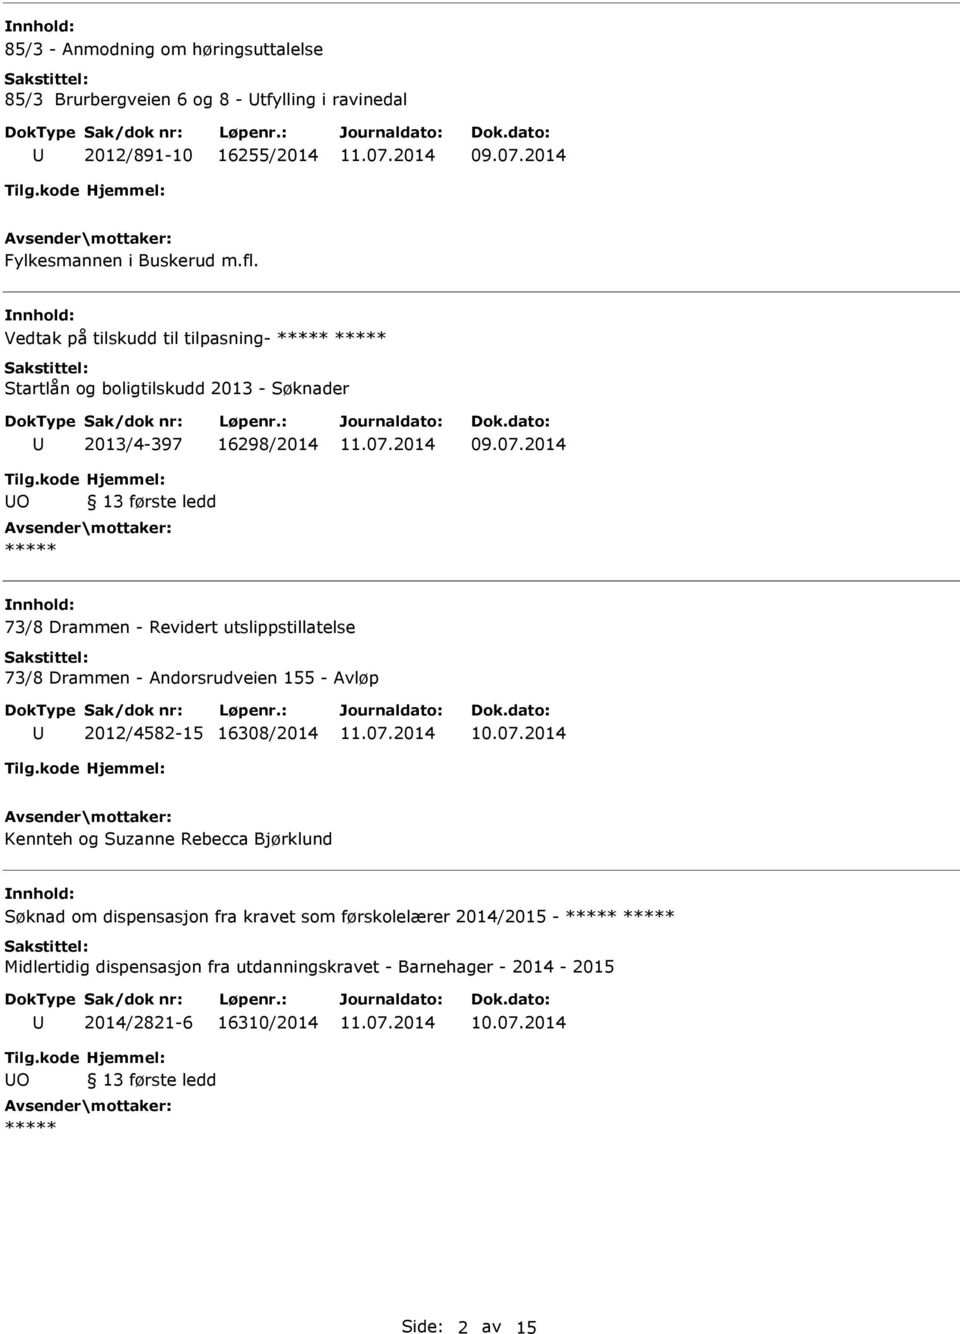 utslippstillatelse 73/8 Drammen - Andorsrudveien 155 - Avløp 2012/4582-15 16308/2014 Kennteh og Suzanne Rebecca Bjørklund Søknad om dispensasjon